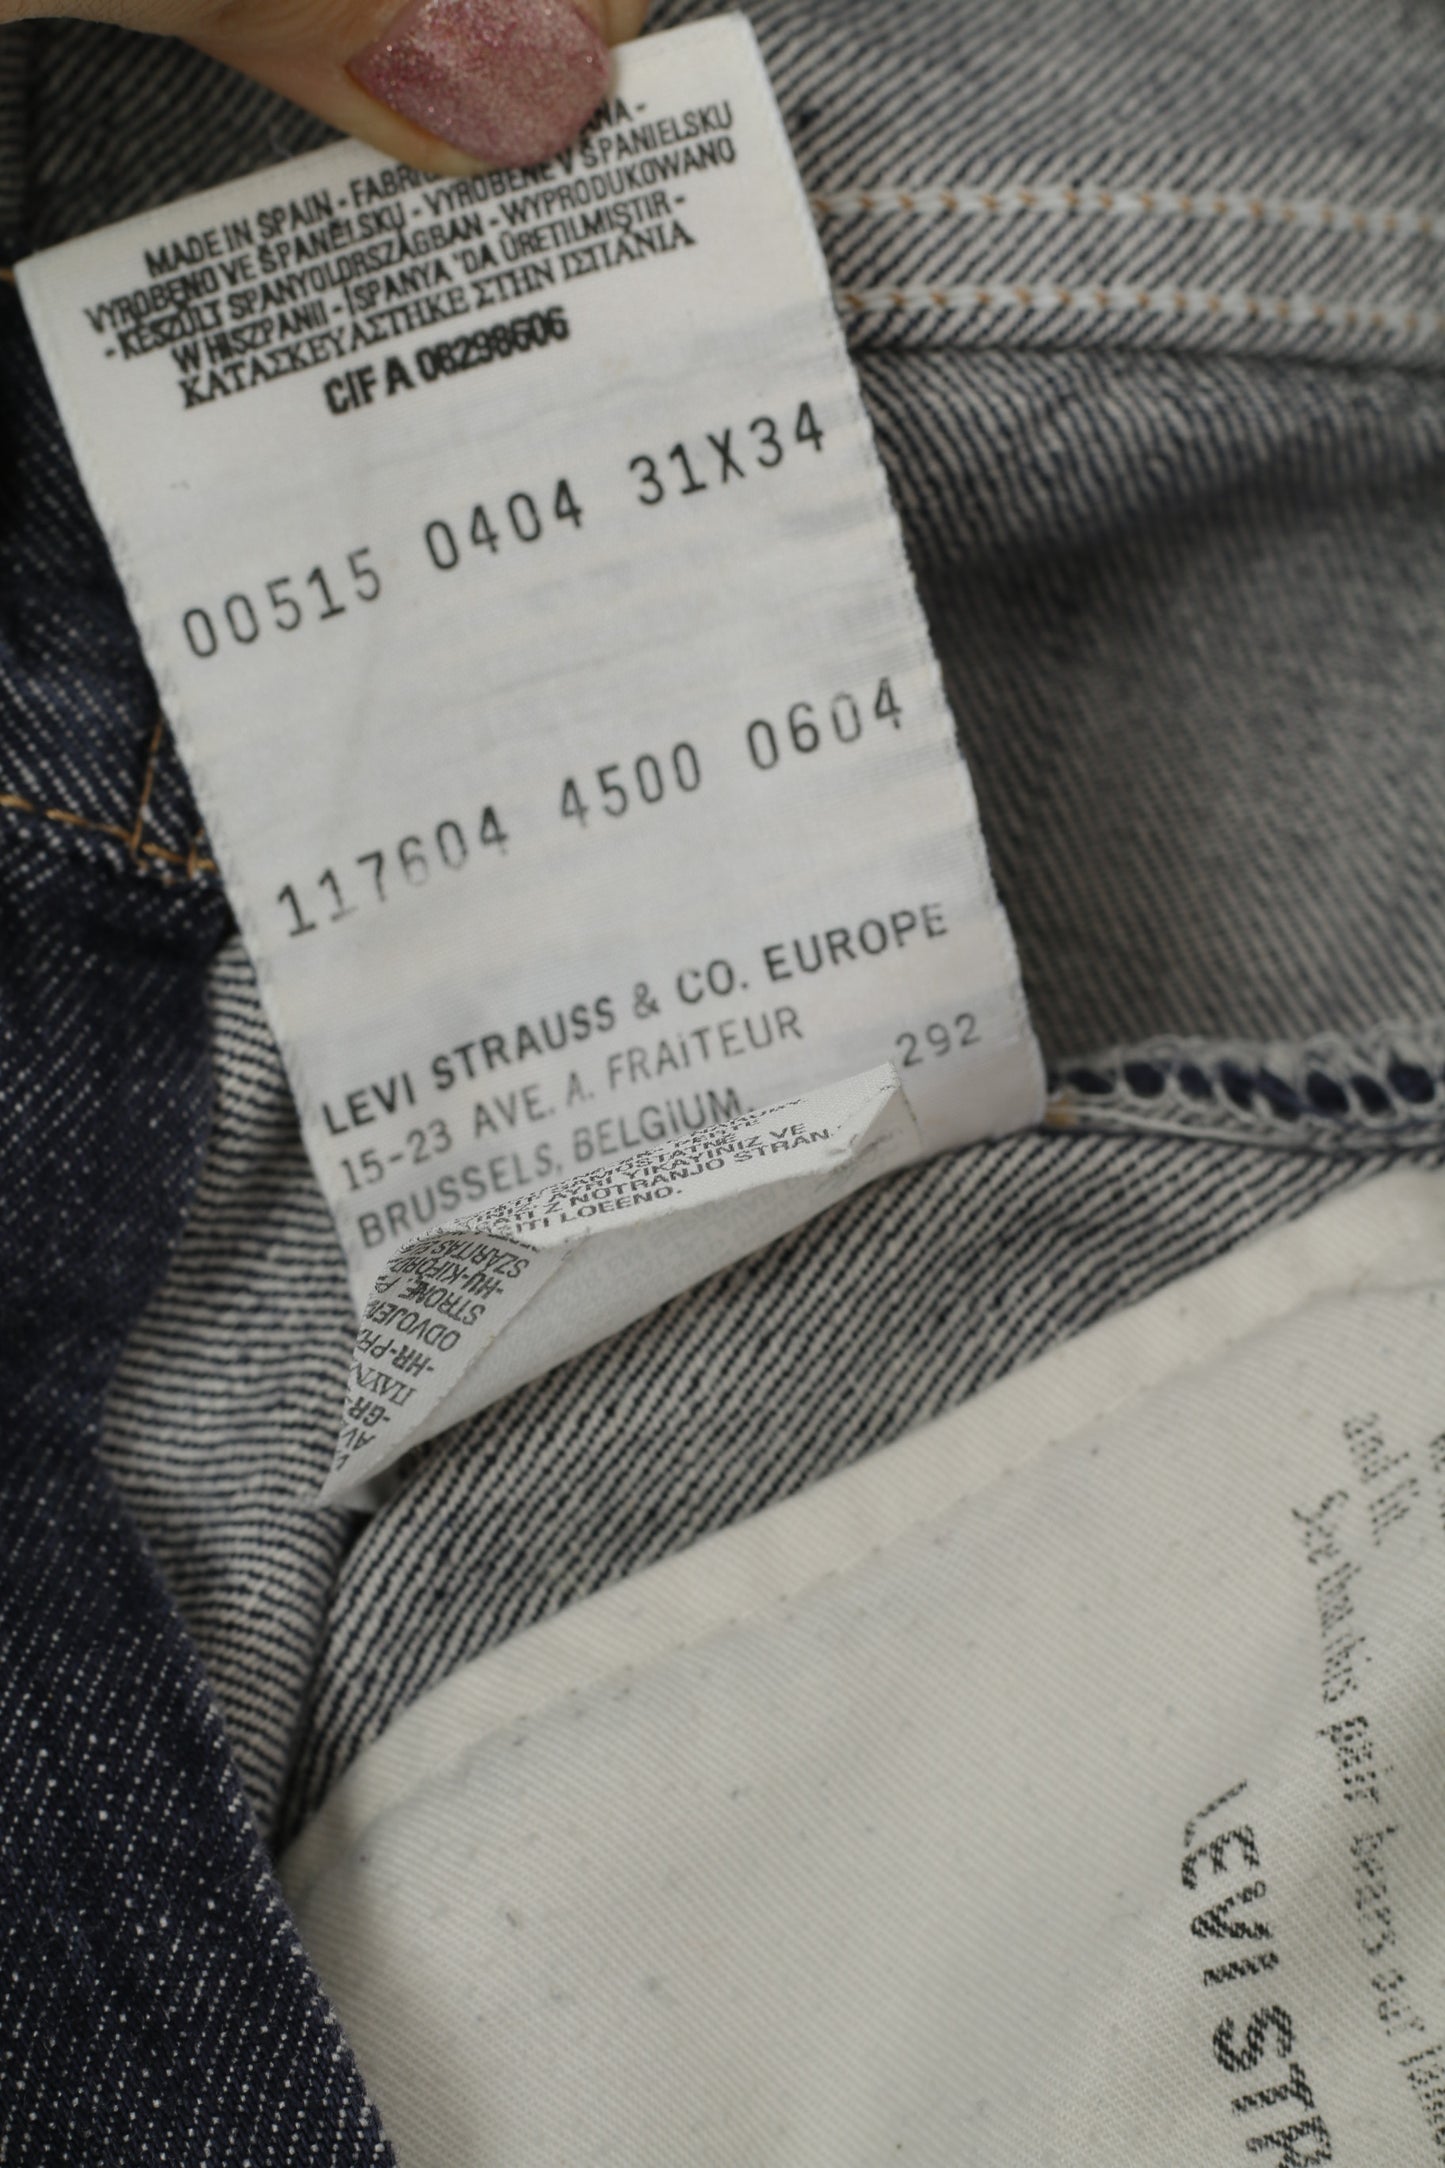 Levi Strauss & CO. Men W 31 L 34 Trousers 515 Denim Jeans Navy Cotton Classic Pants